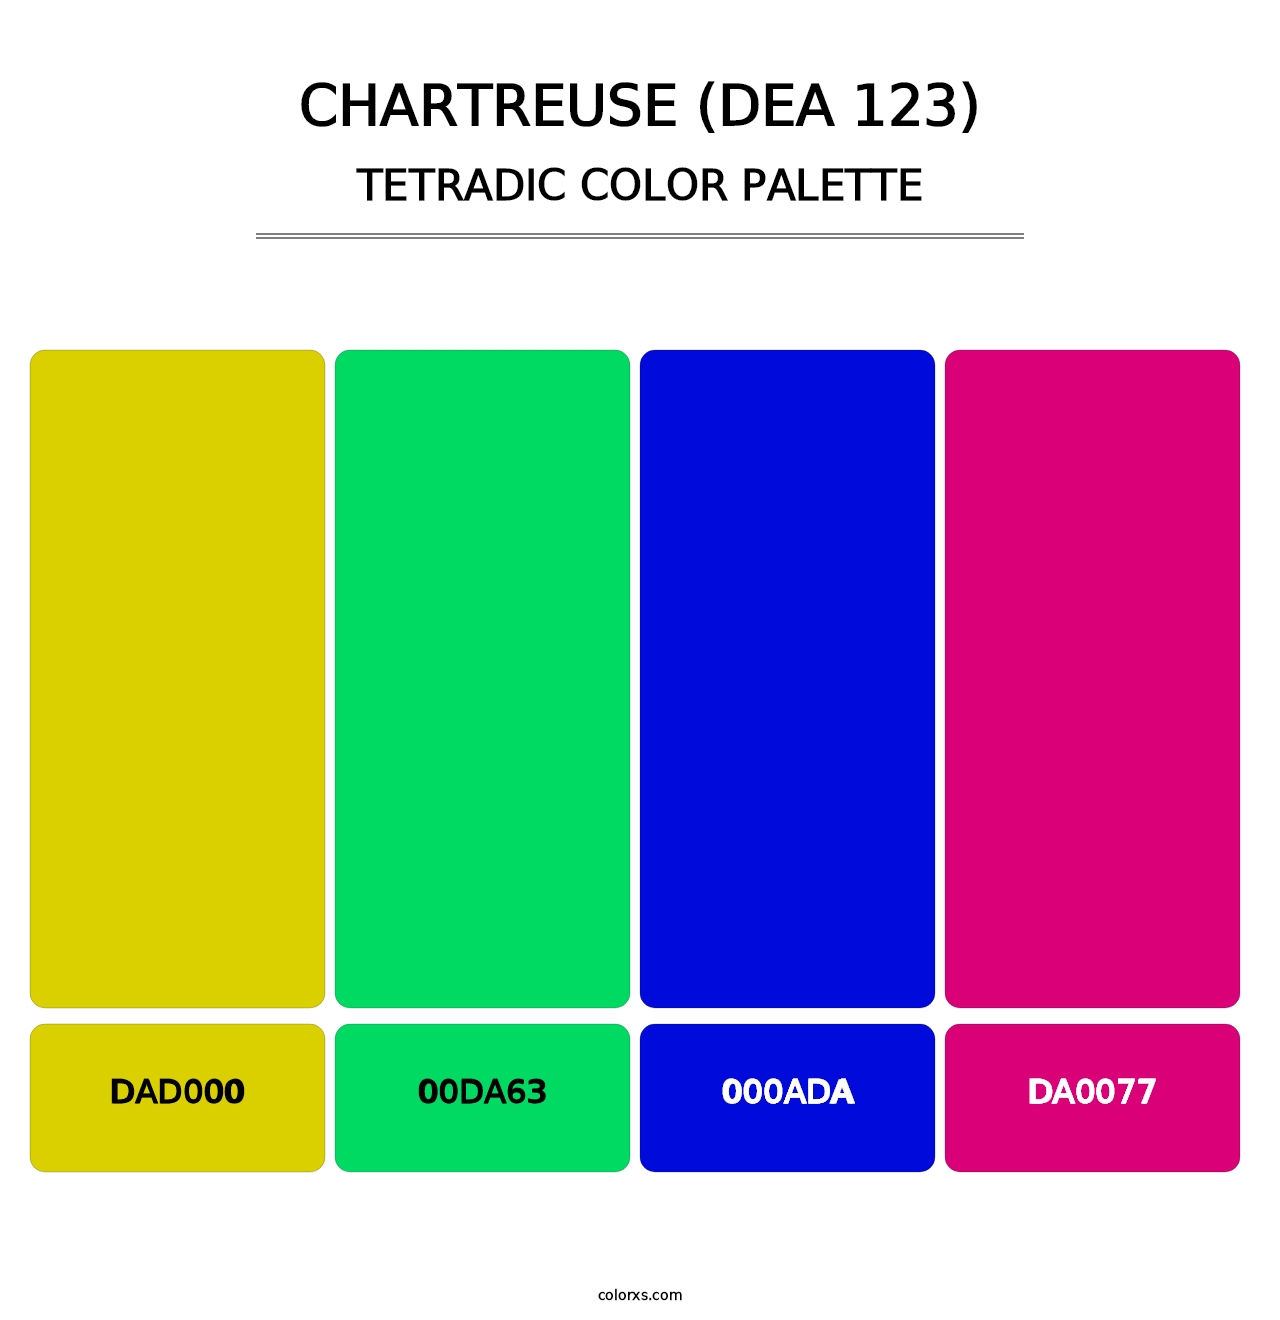 Chartreuse (DEA 123) - Tetradic Color Palette